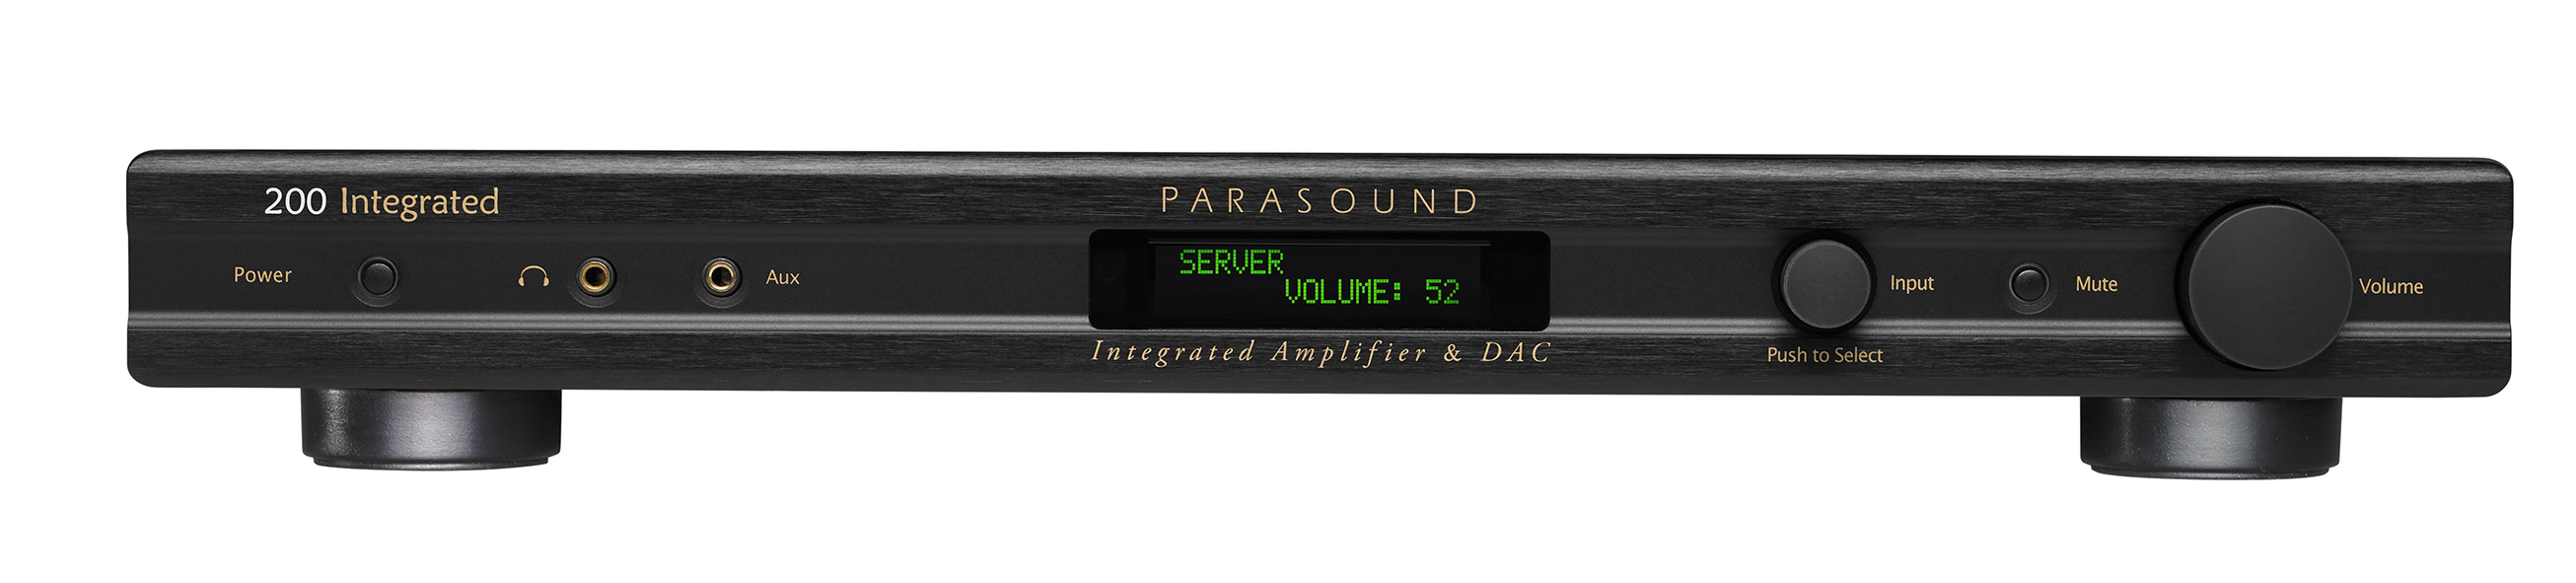 Интегральные стереоусилители Parasound 200 Integrated интегральные стереоусилители parasound zone master 2350